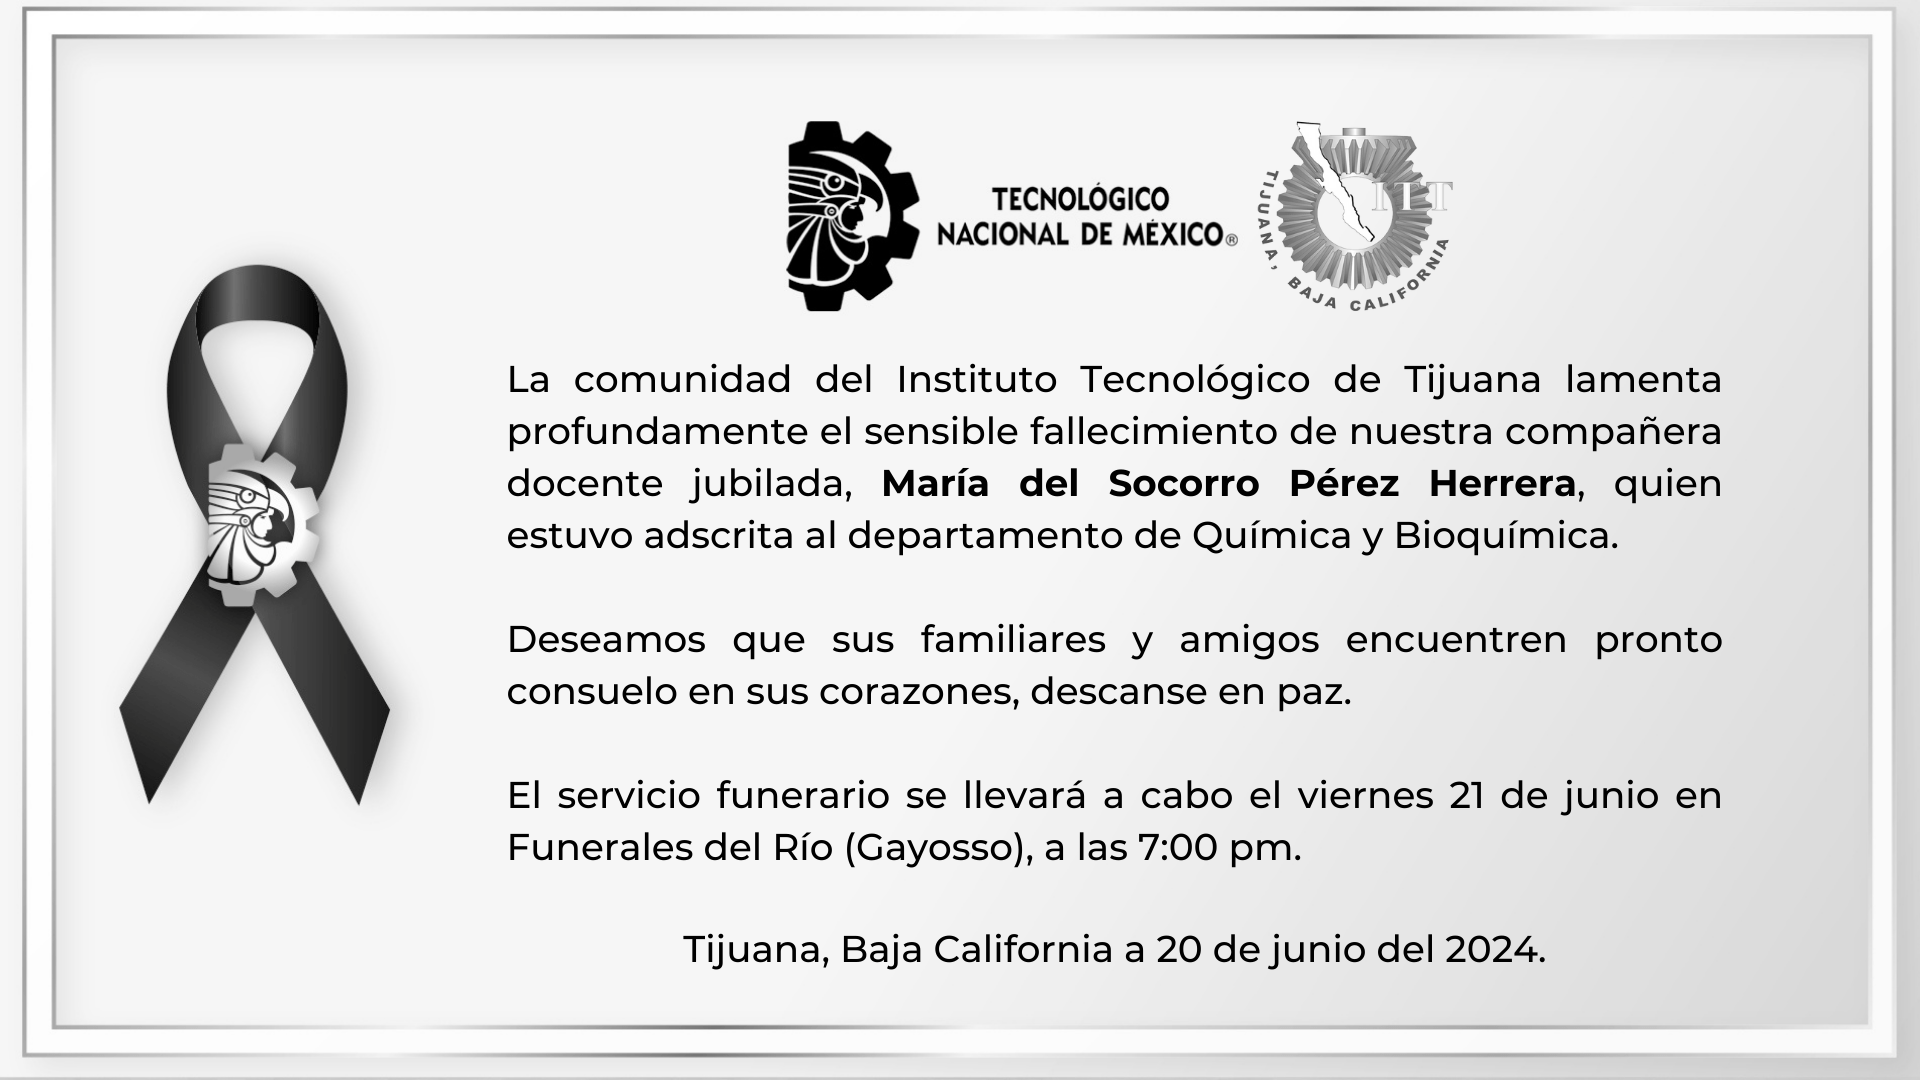 La comunidad del Instituto Tecnológico de Tijuana lamenta profundamente el sensible fallecimiento de nuestra compañera docente jubilada, María del Socorro Pérez Herrera